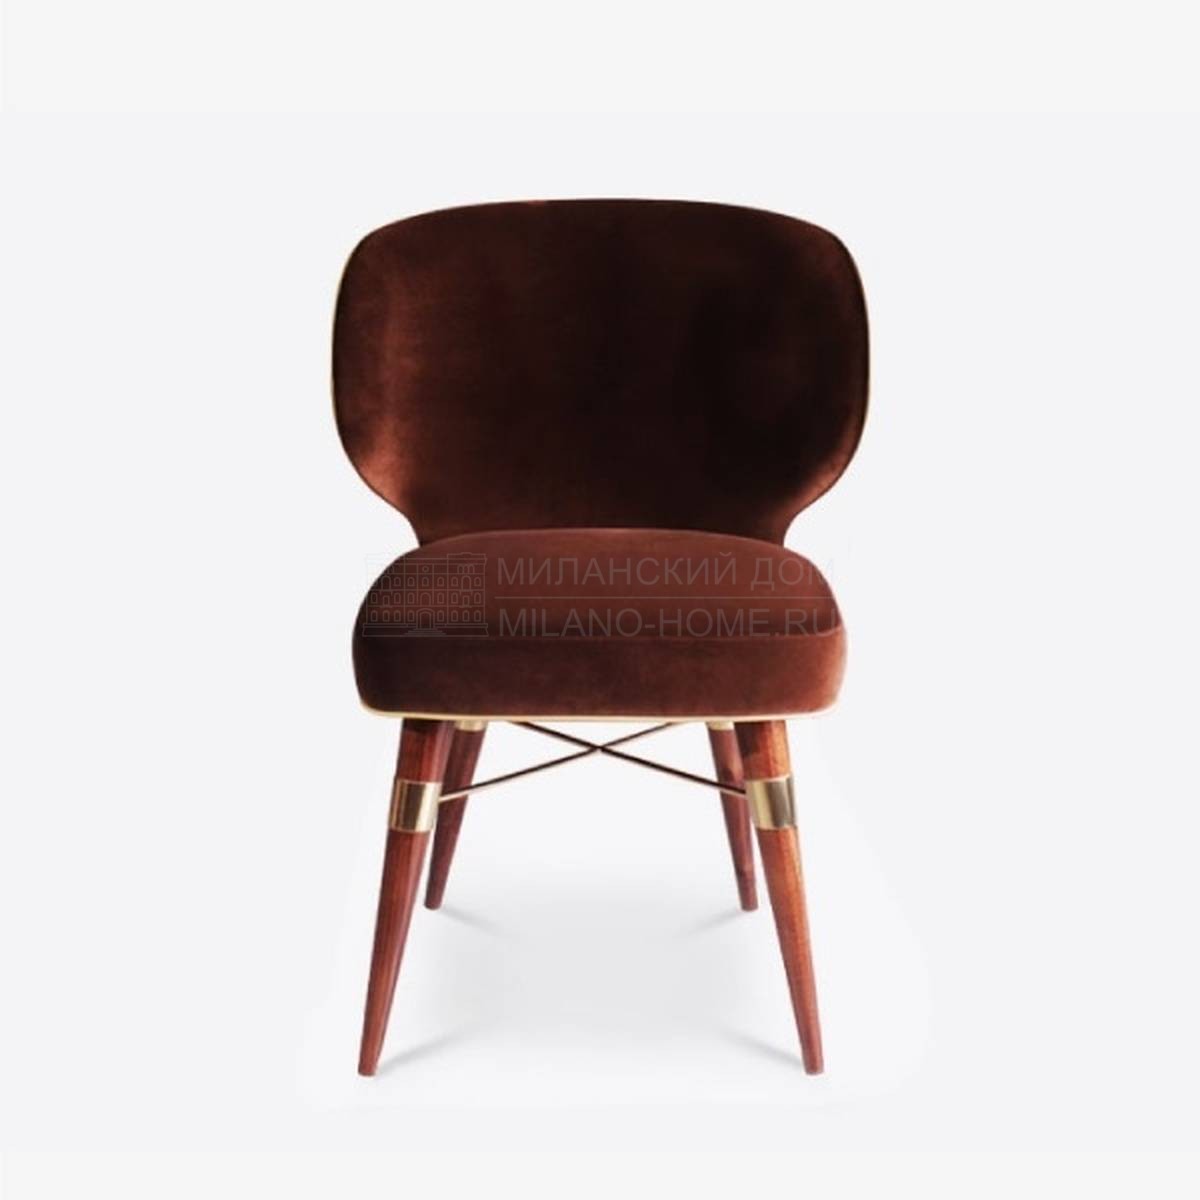 Стул Louis dining chair из Португалии фабрики OTTIU